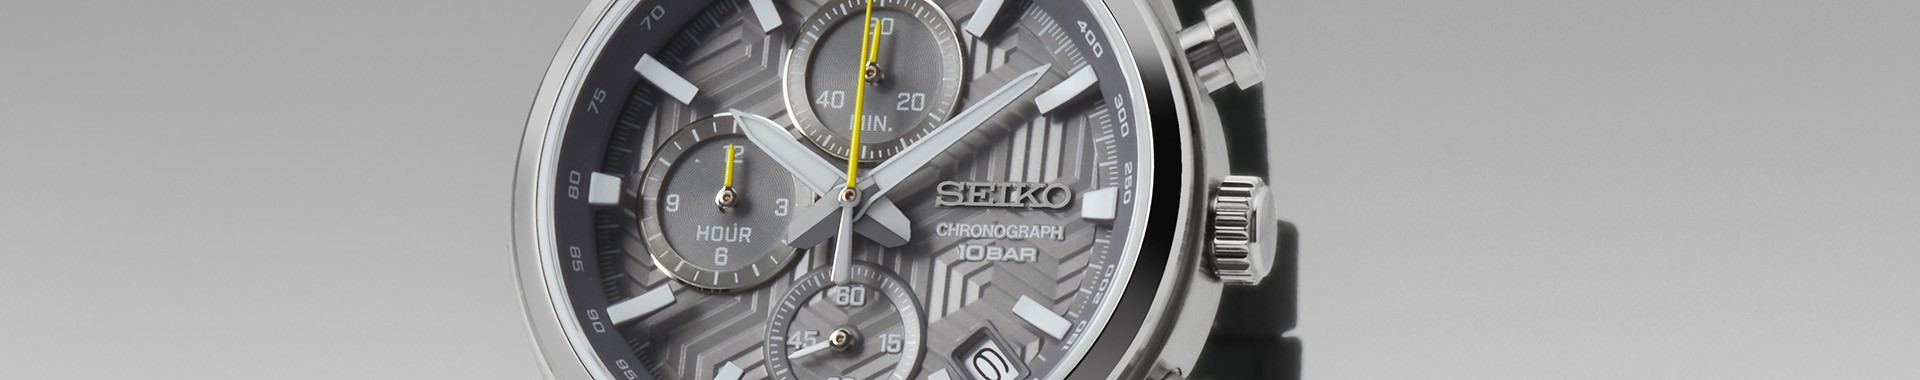 Seiko Sport Uhren für Männer - Seiko Boutique